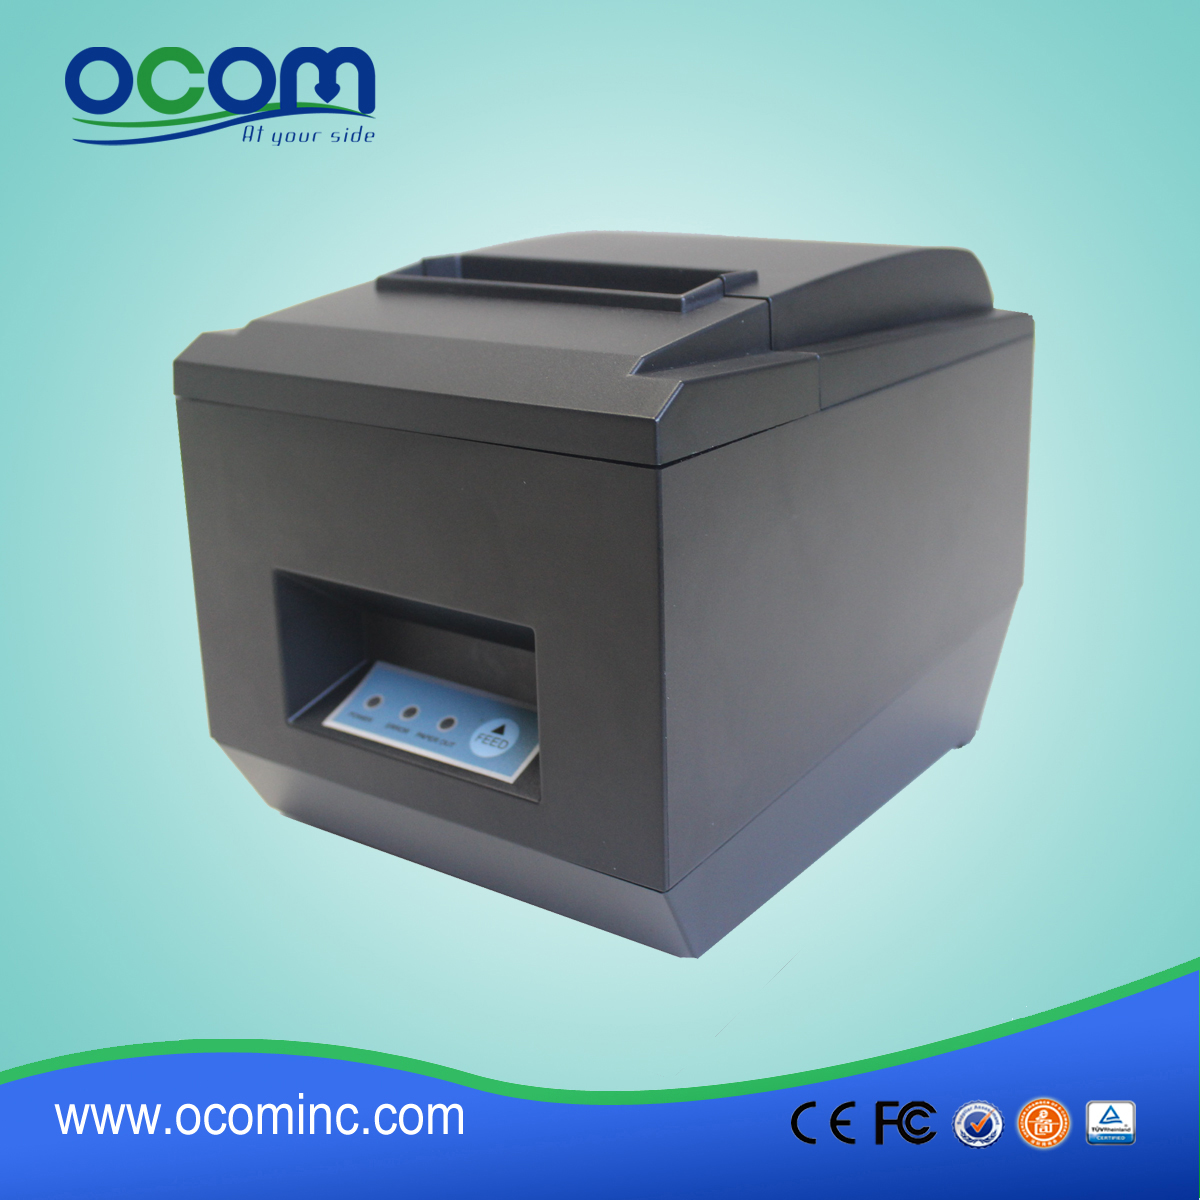 高速打印的80毫米POS热敏票据打印机-- OCPP-809